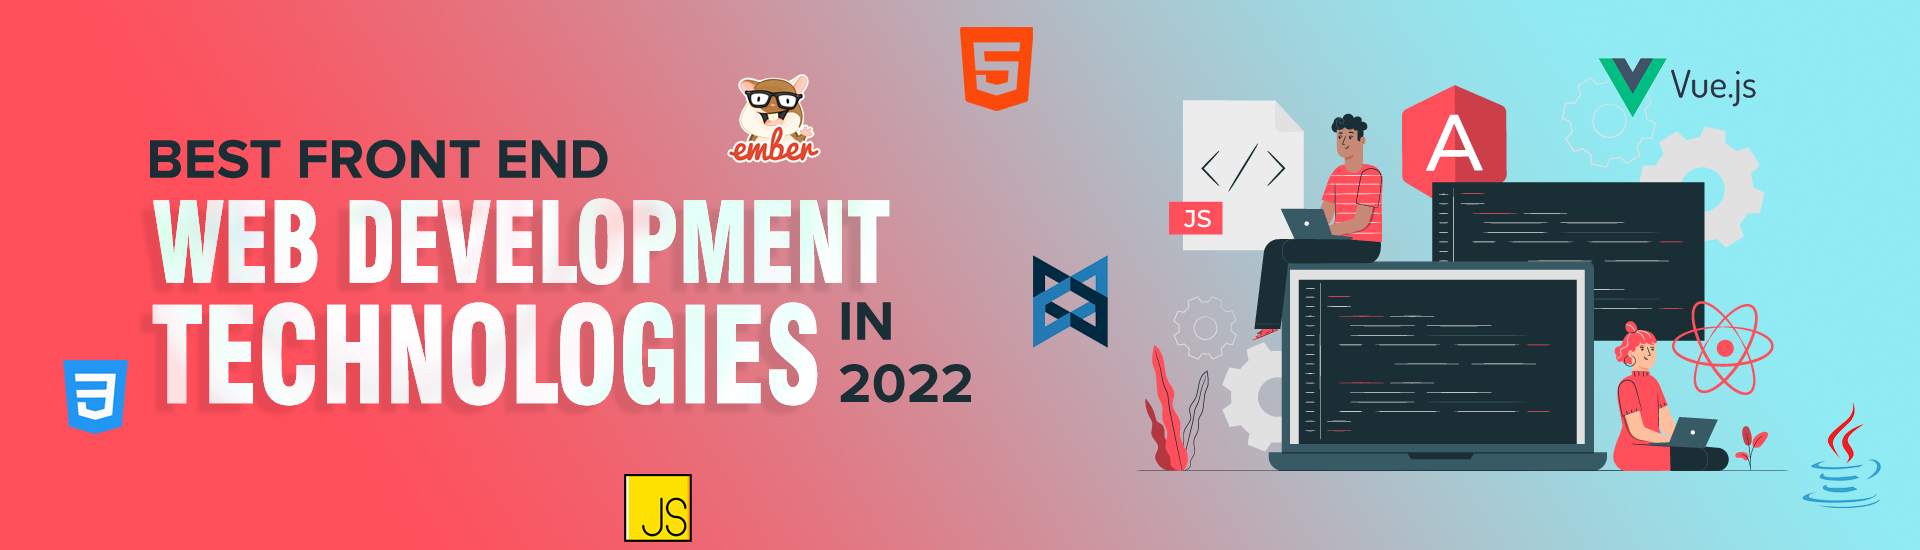 Best Front End Web Development Technologies In 2022